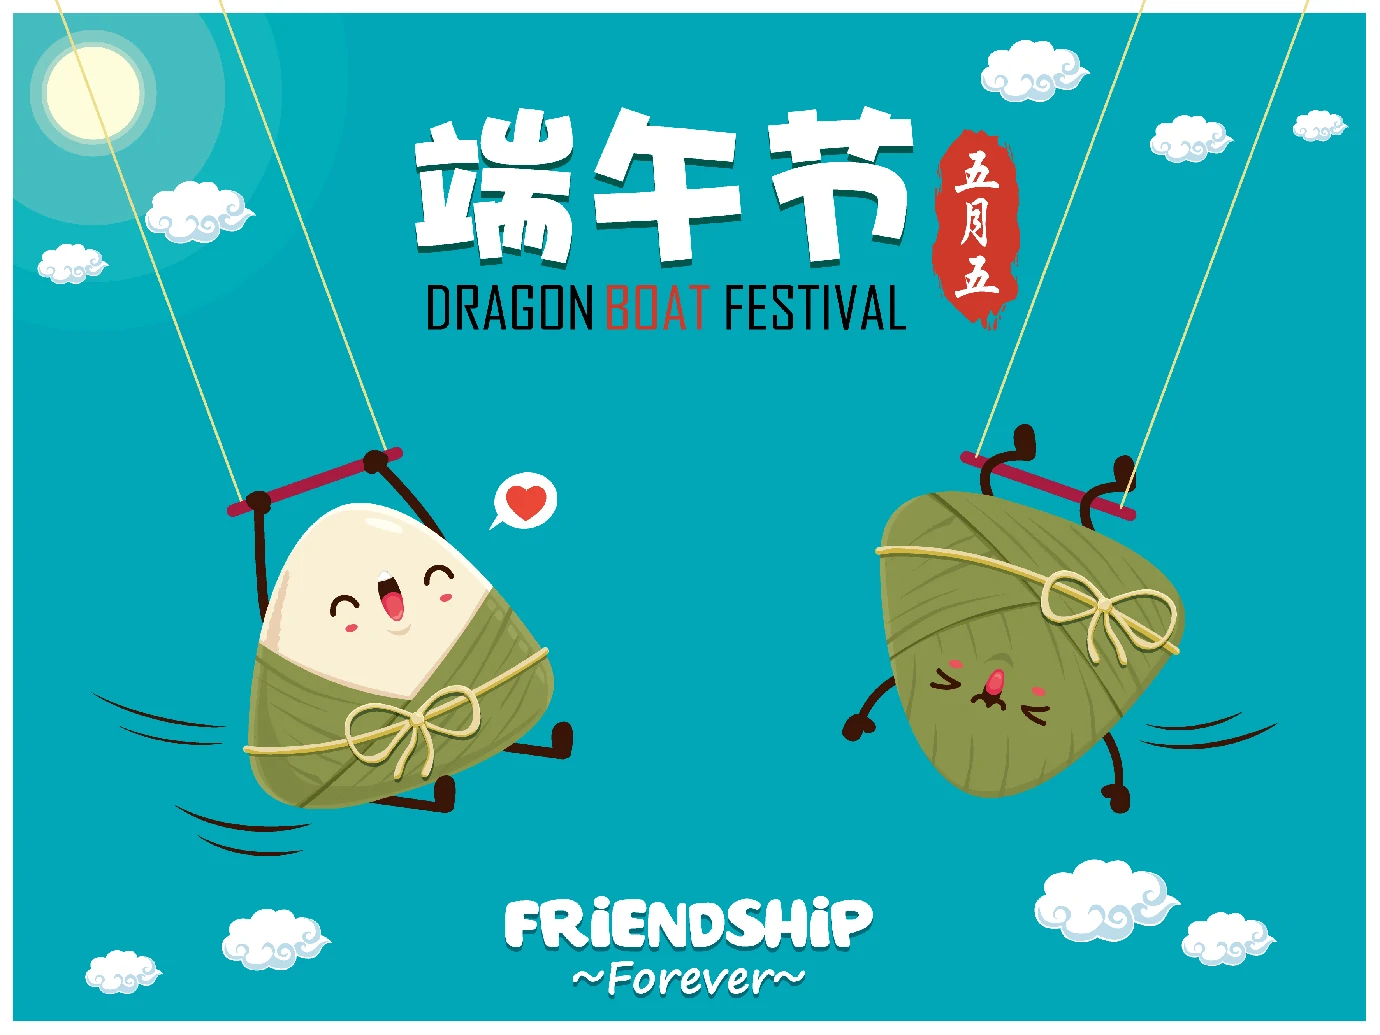 中国传统节日卡通手绘端午节赛龙舟粽子插画海报AI矢量设计素材【071】